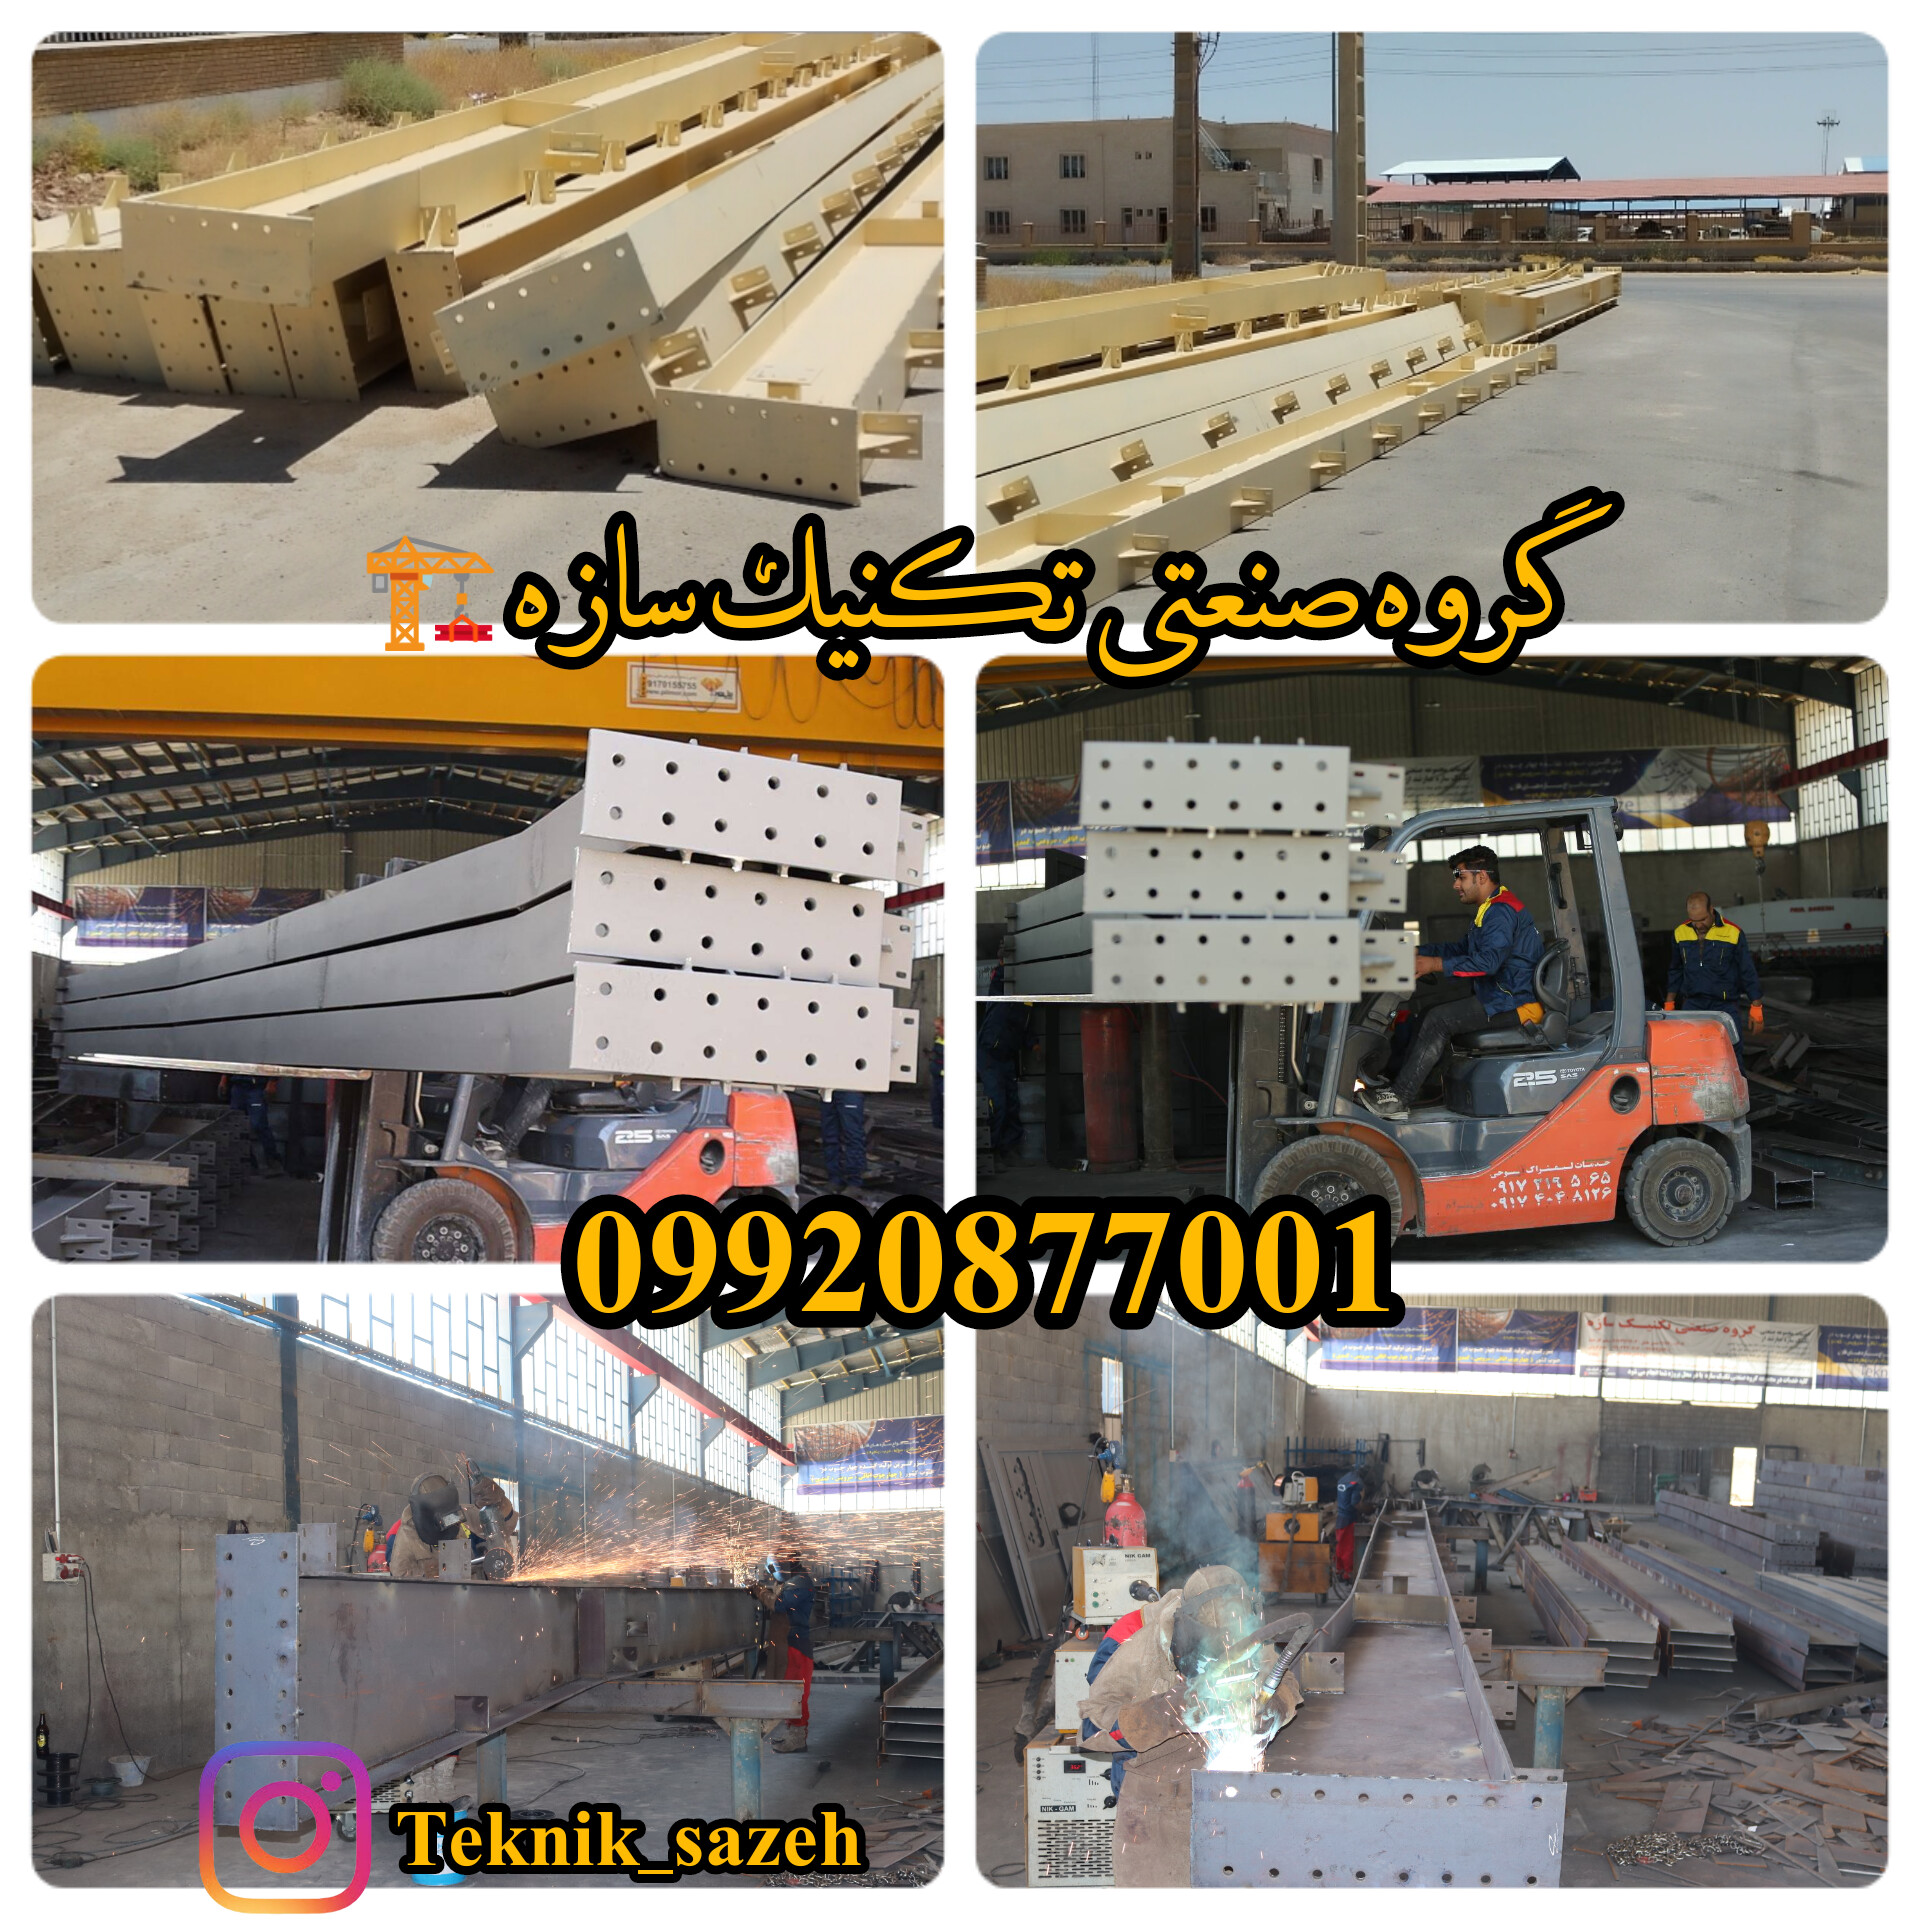 ساخت سوله صنعتی پروژه بوشهر با وزن بیش از 500تن گروه صنعتی تکنیک سازه 09920877001